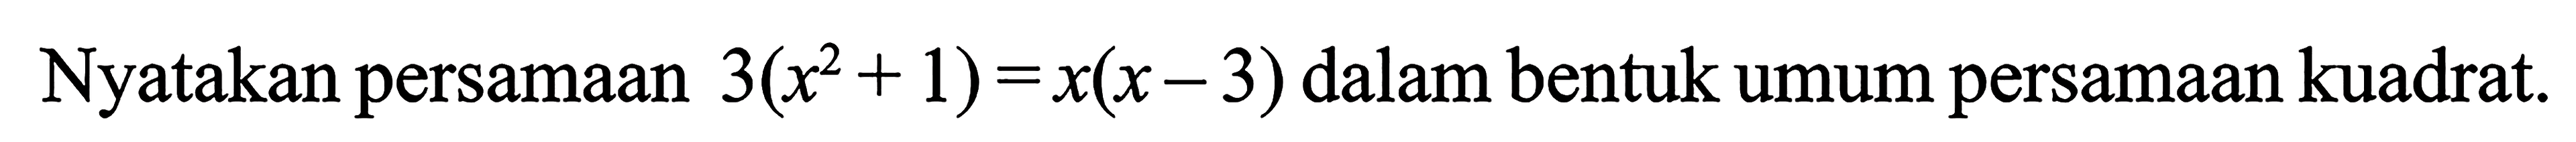 Nyatakan persamaan 3(x^2+1)=x(x- 3) dalam bentuk umum persamaan kuadrat